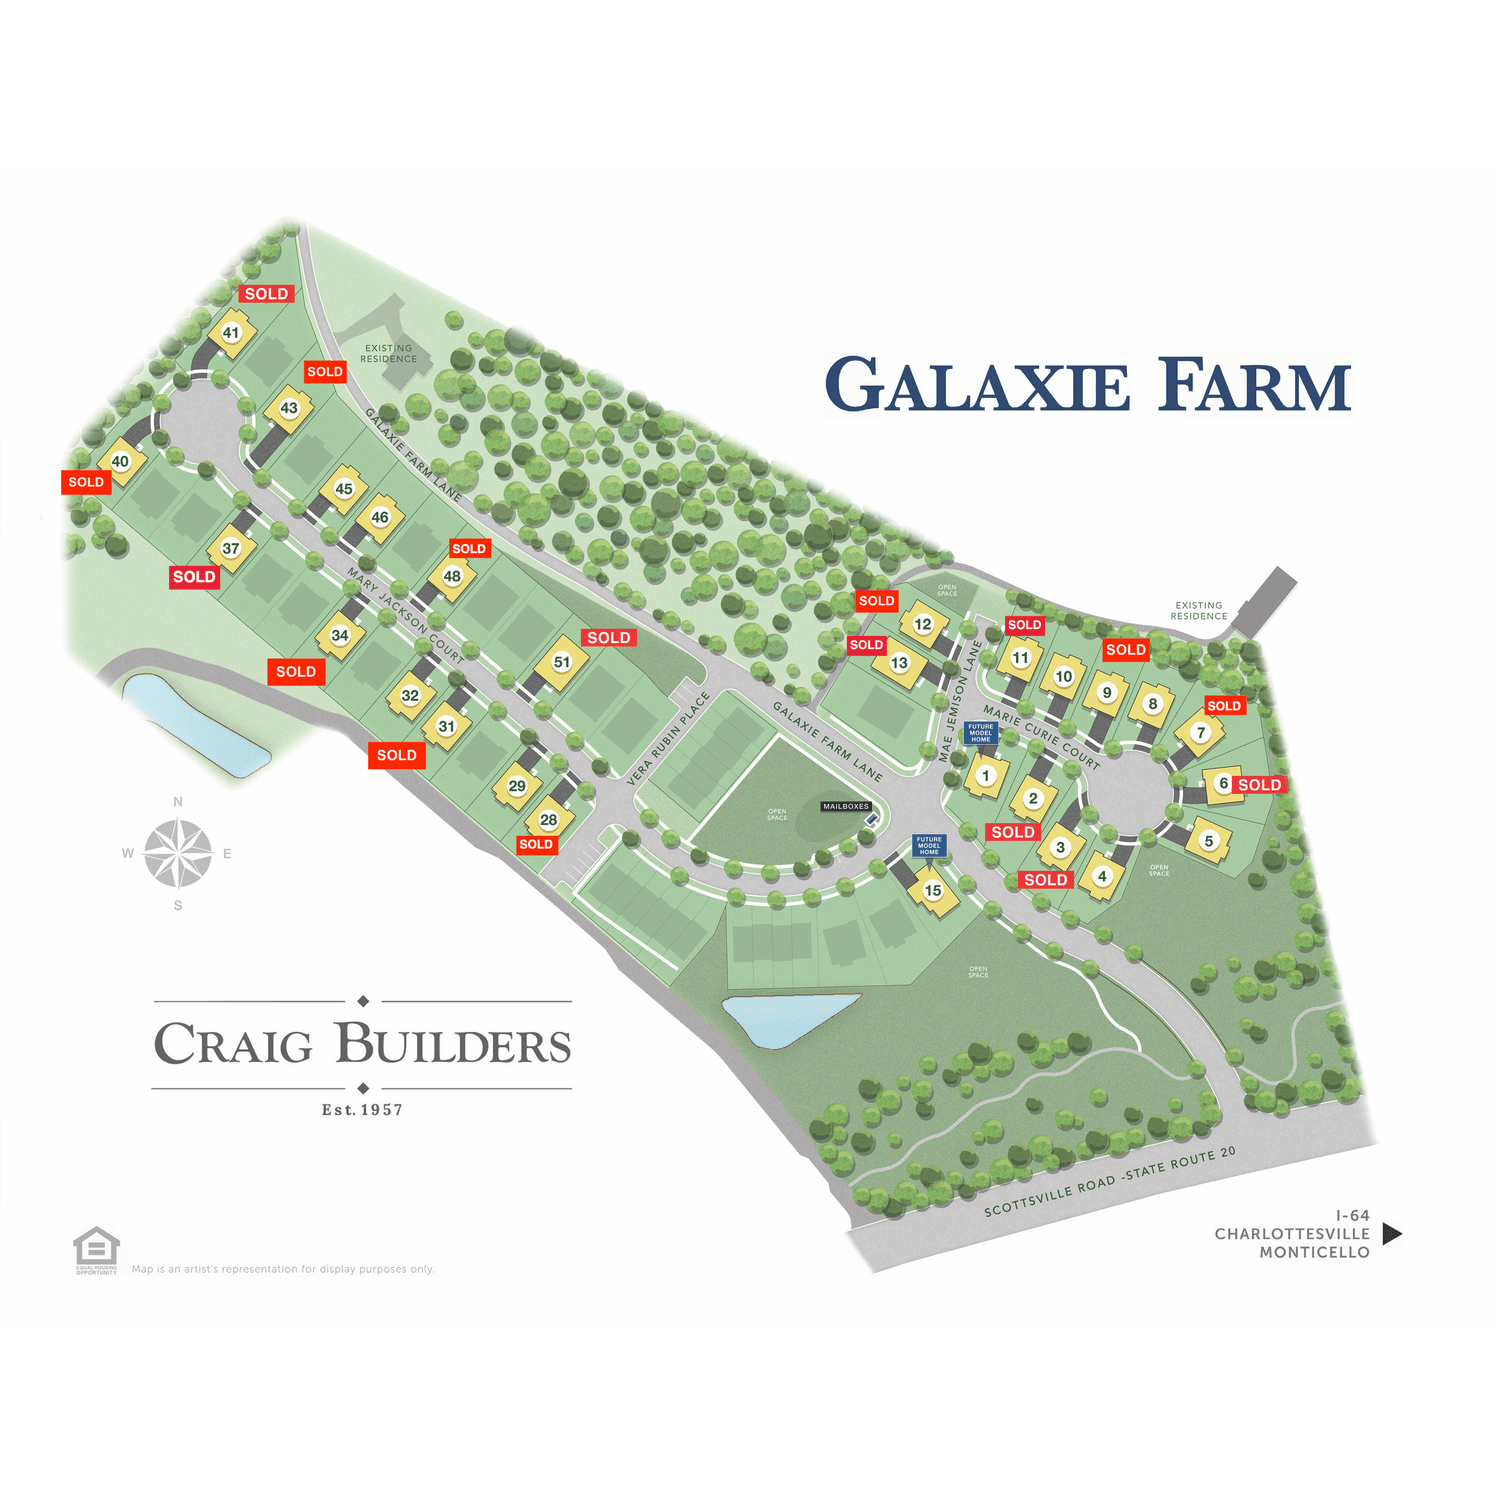 12. Galaxie Farm建於 4006 Marie Curie Court, Charlottesville, VA 22902